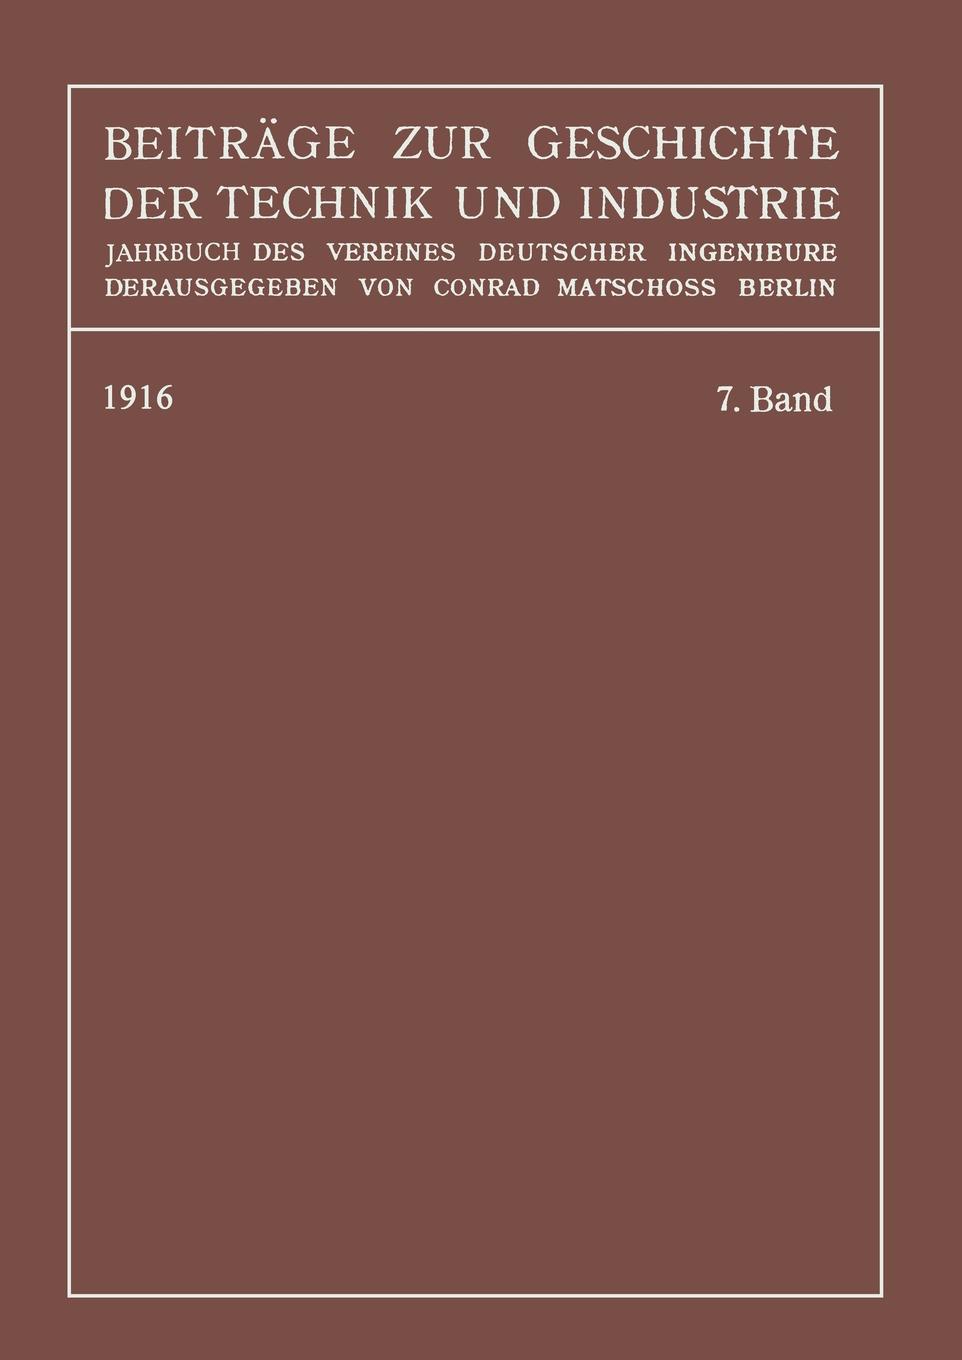 Beitrage Zur Geschichte Der Technik Und Industrie. Jahrbuch Des Vereines Deutscher Ingenieure, Siebenter Band